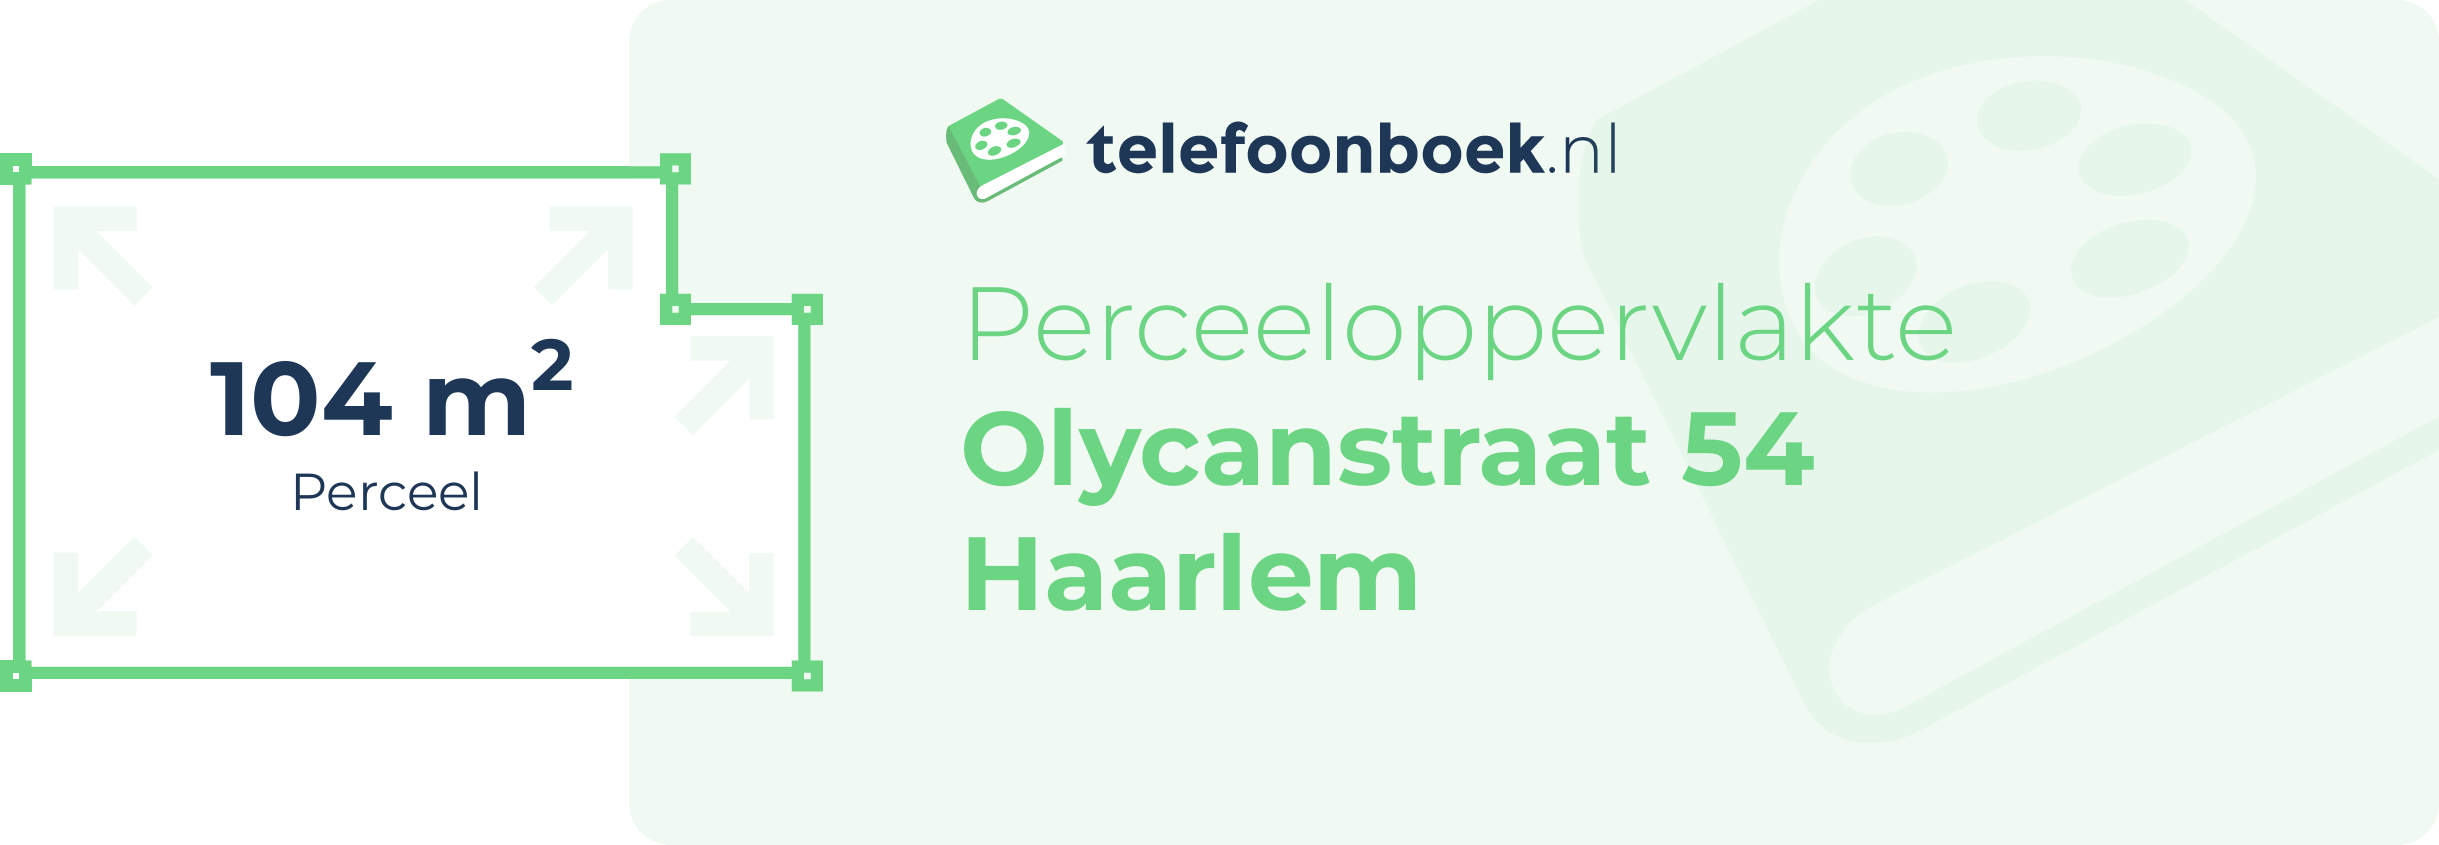 Perceeloppervlakte Olycanstraat 54 Haarlem